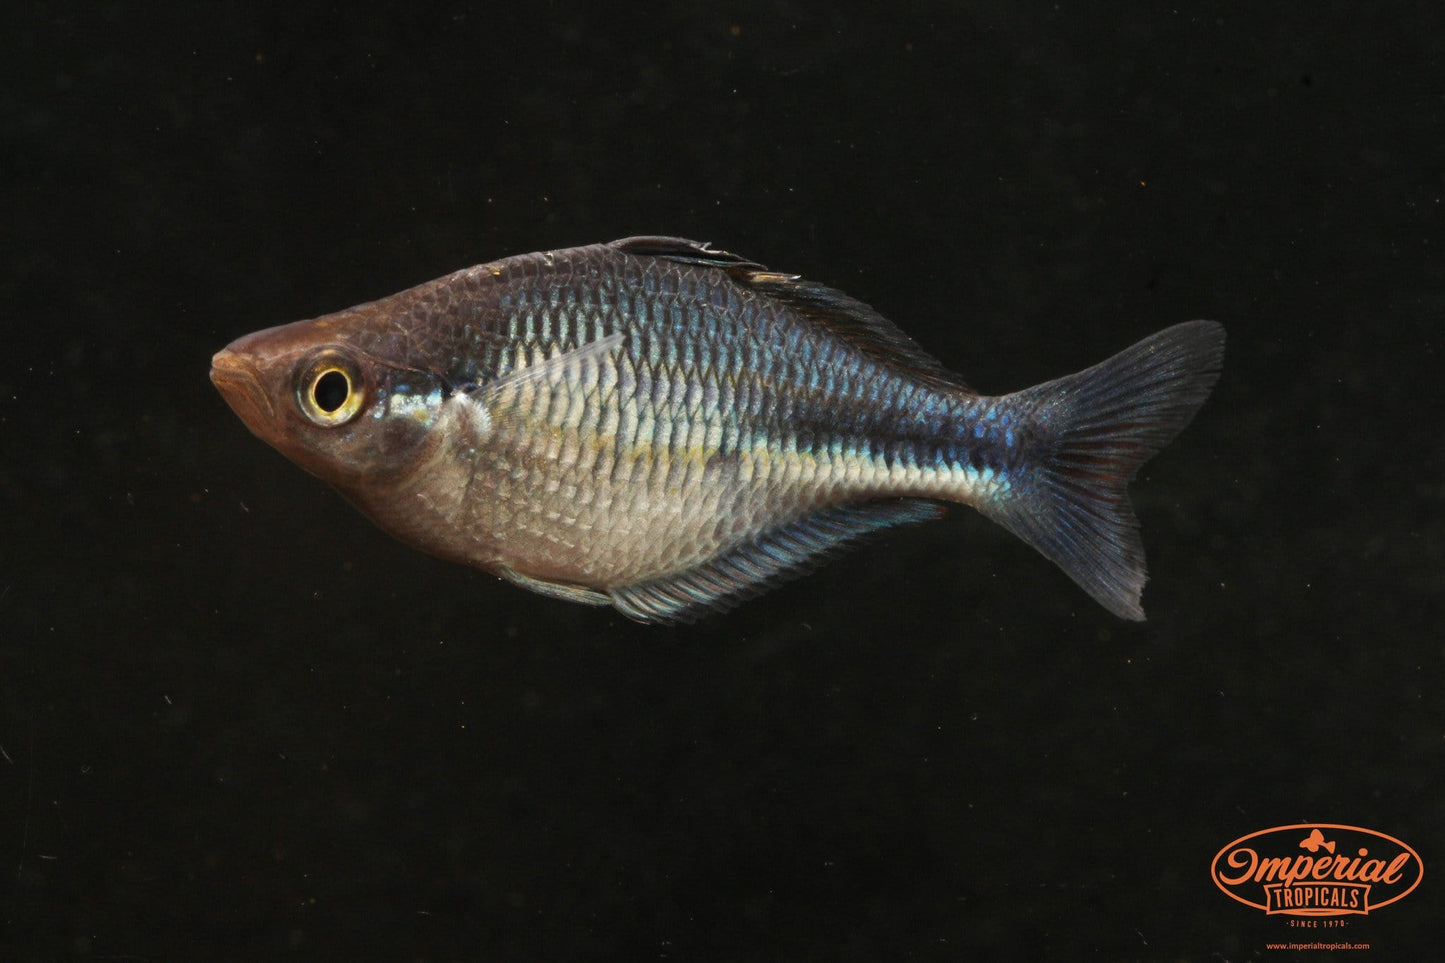 Turquoise Rainbowfish (Melanotaenia lacustris) - Imperial Tropicals